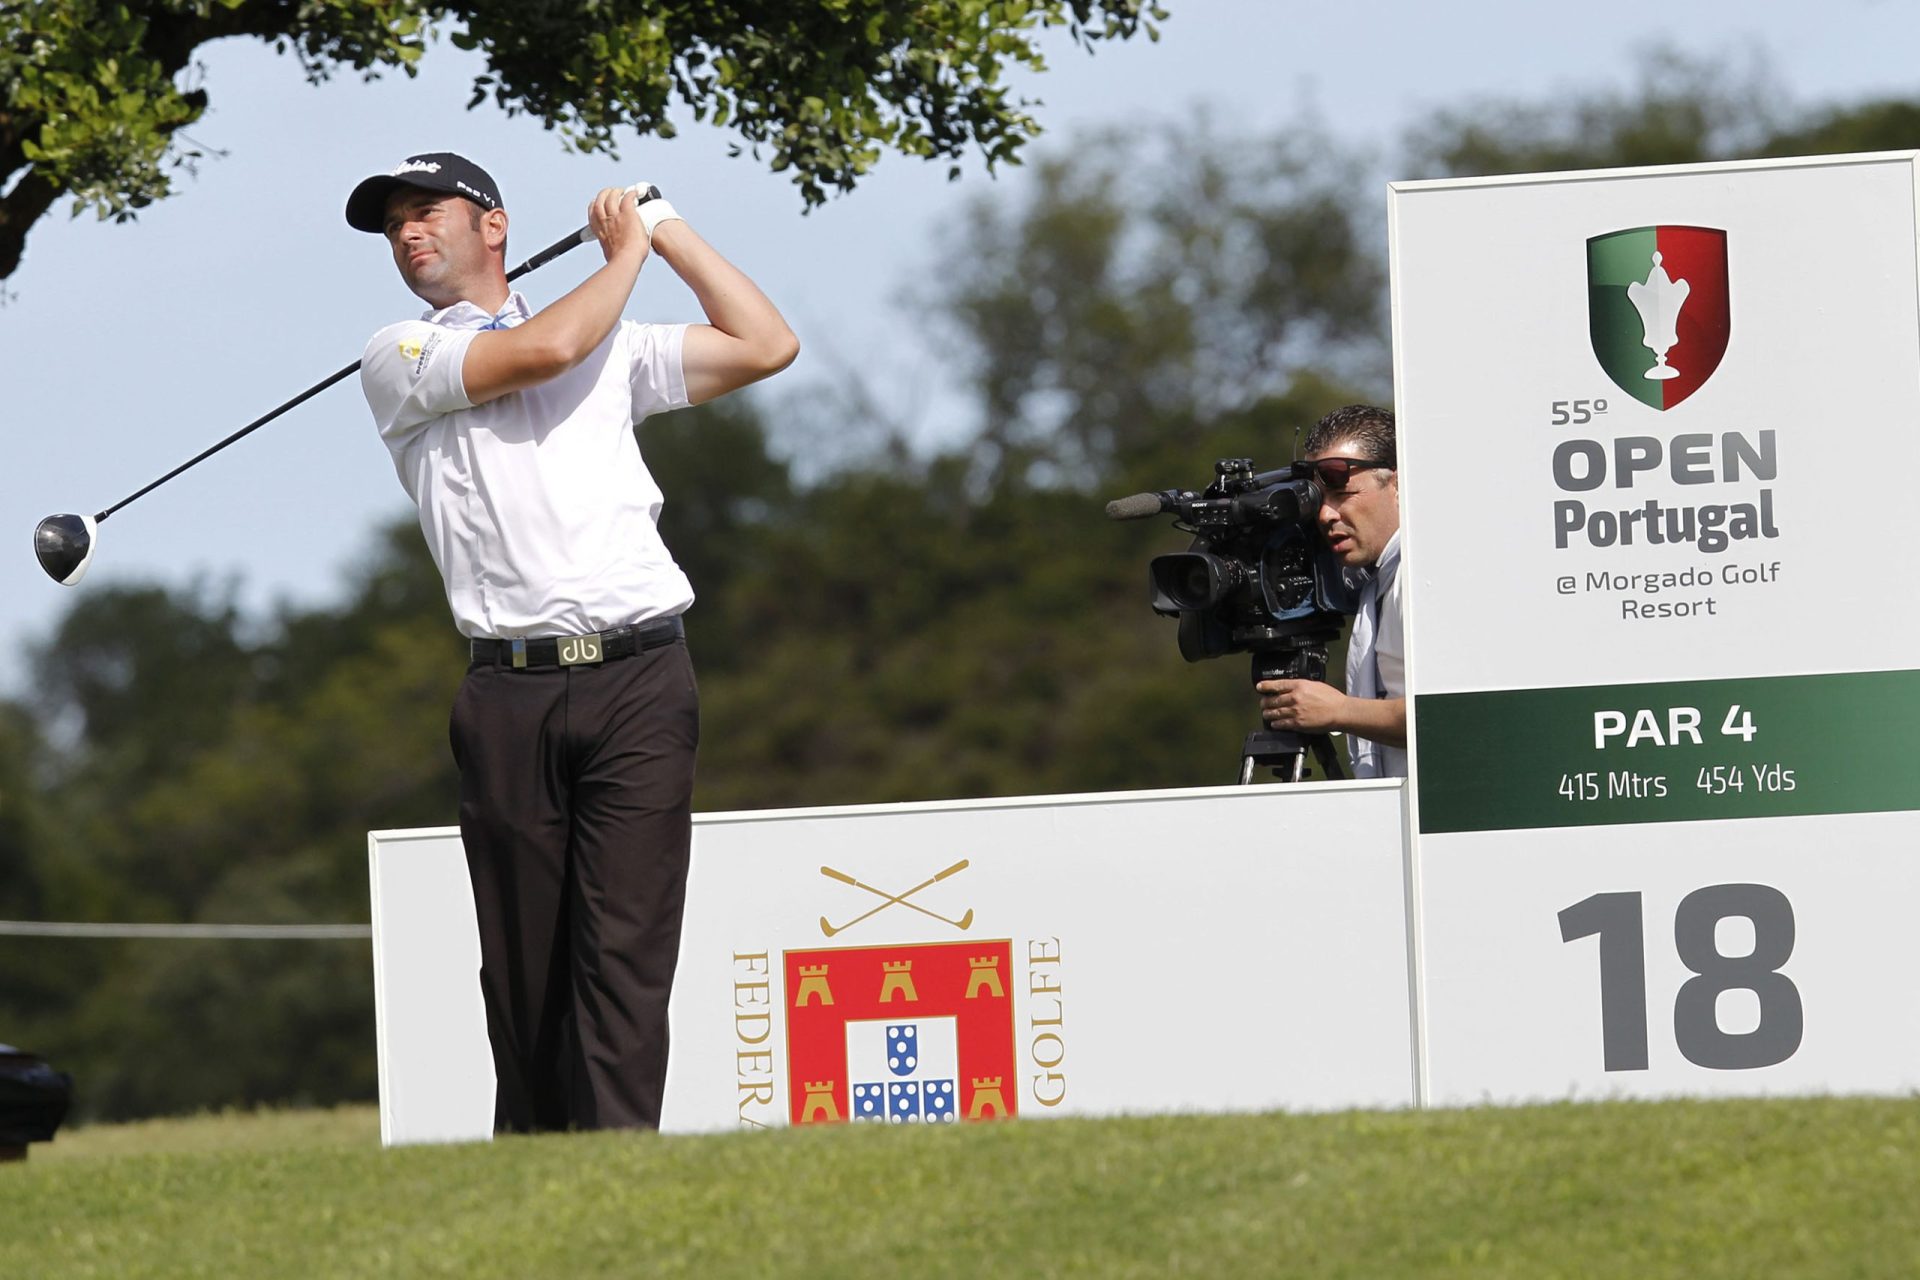 Golfe. Campeões de Espanha e China encabeçam lista de inscritos com recorde de 13 portugueses